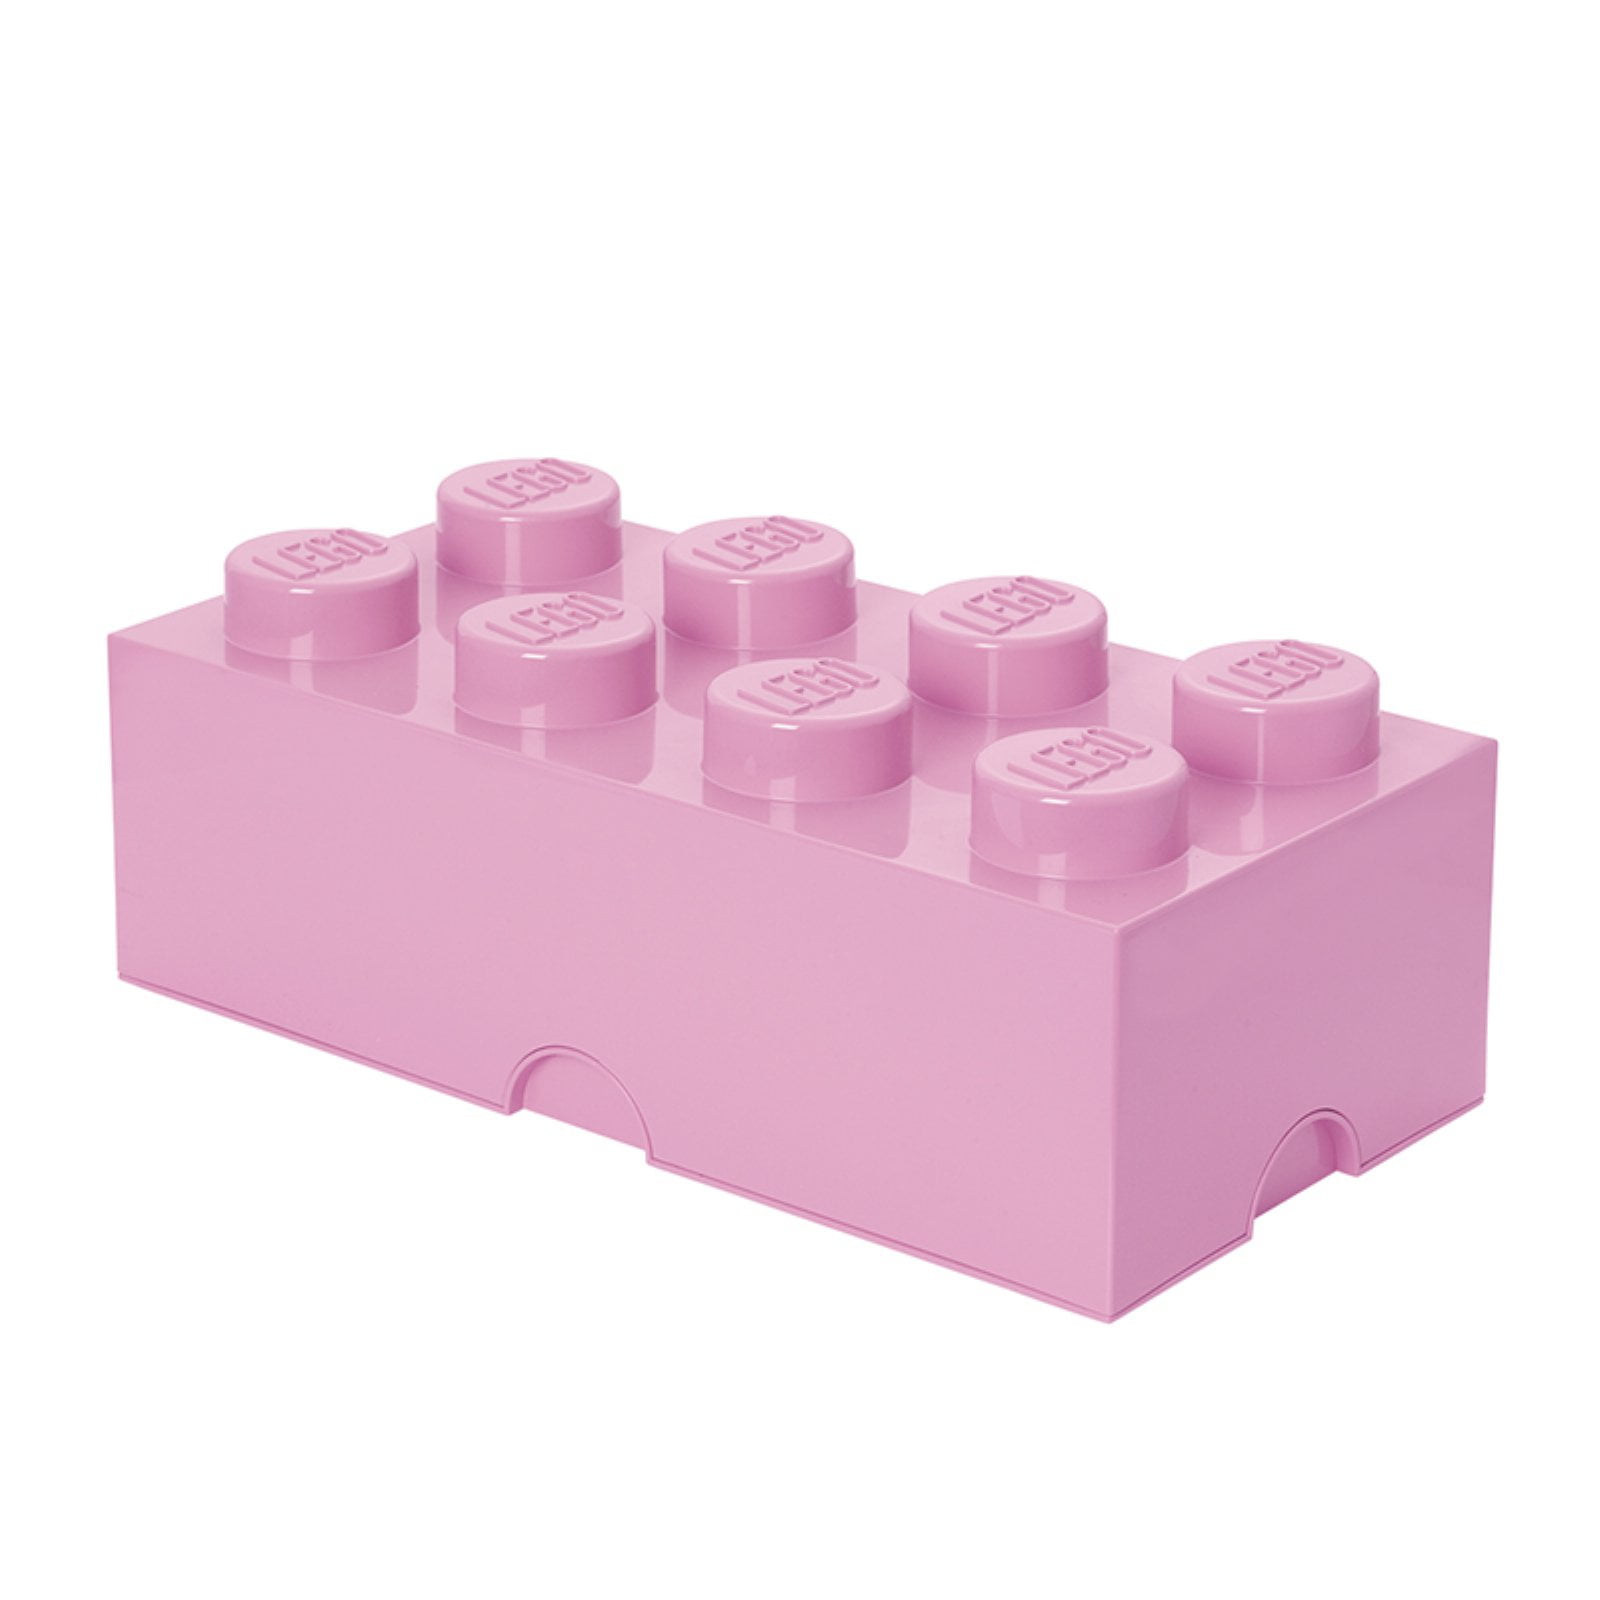 Lego Storage Storage Box - 50x25x18 - 8 Knobs - Cool Yellow